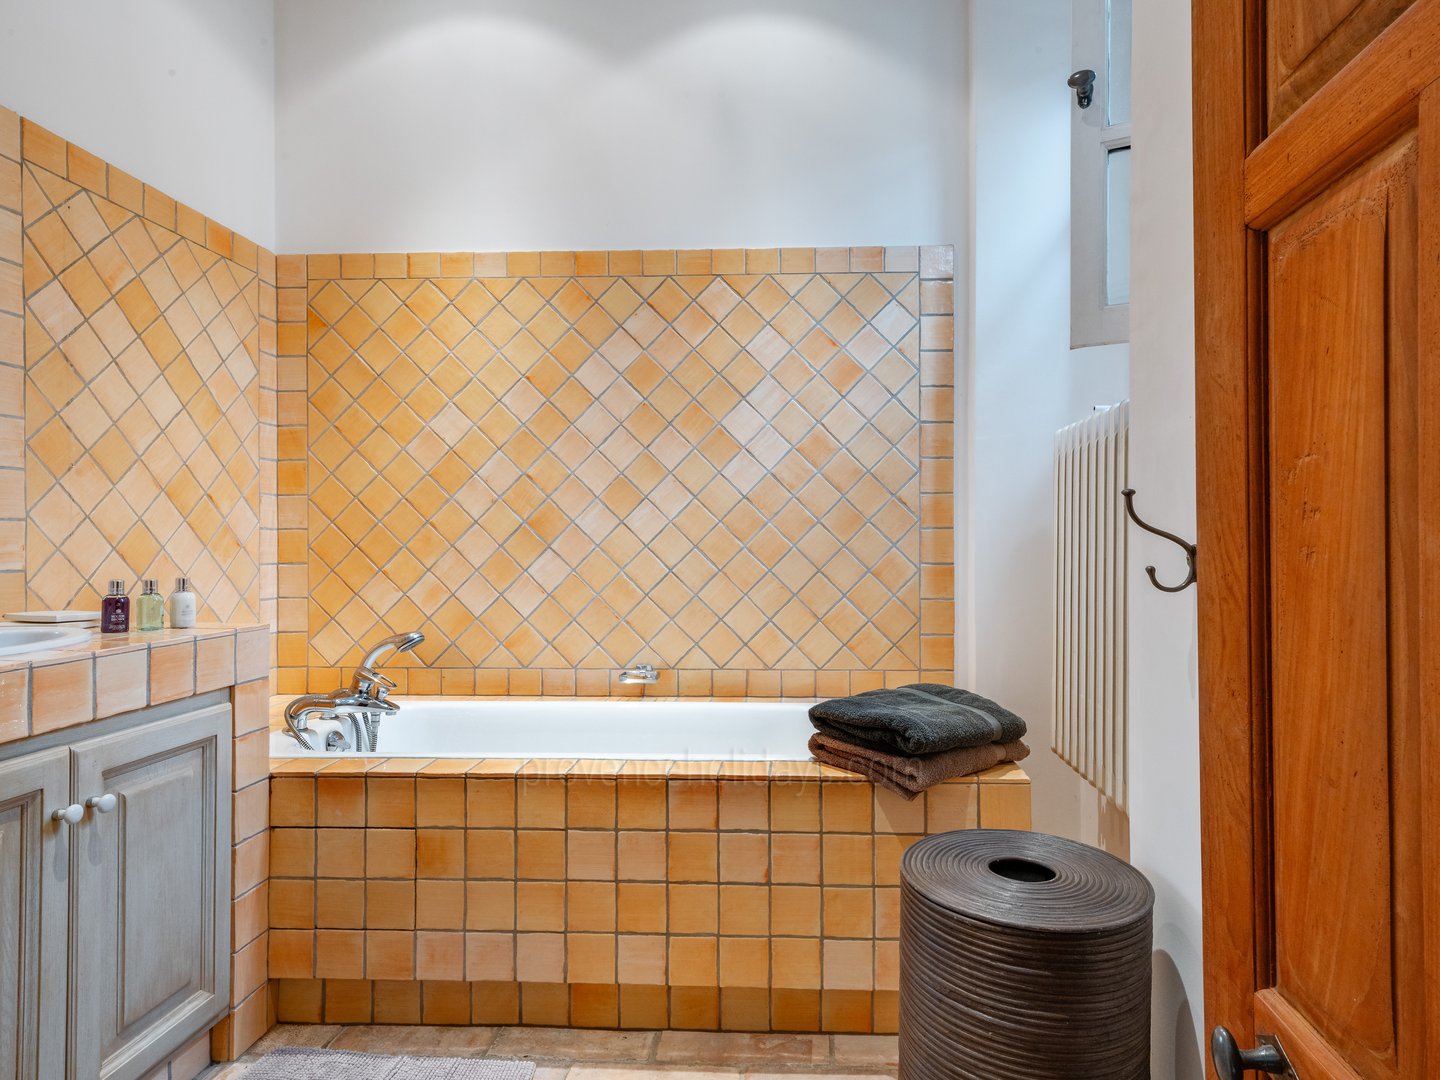 59 - Eden Provençal: Villa: Bathroom